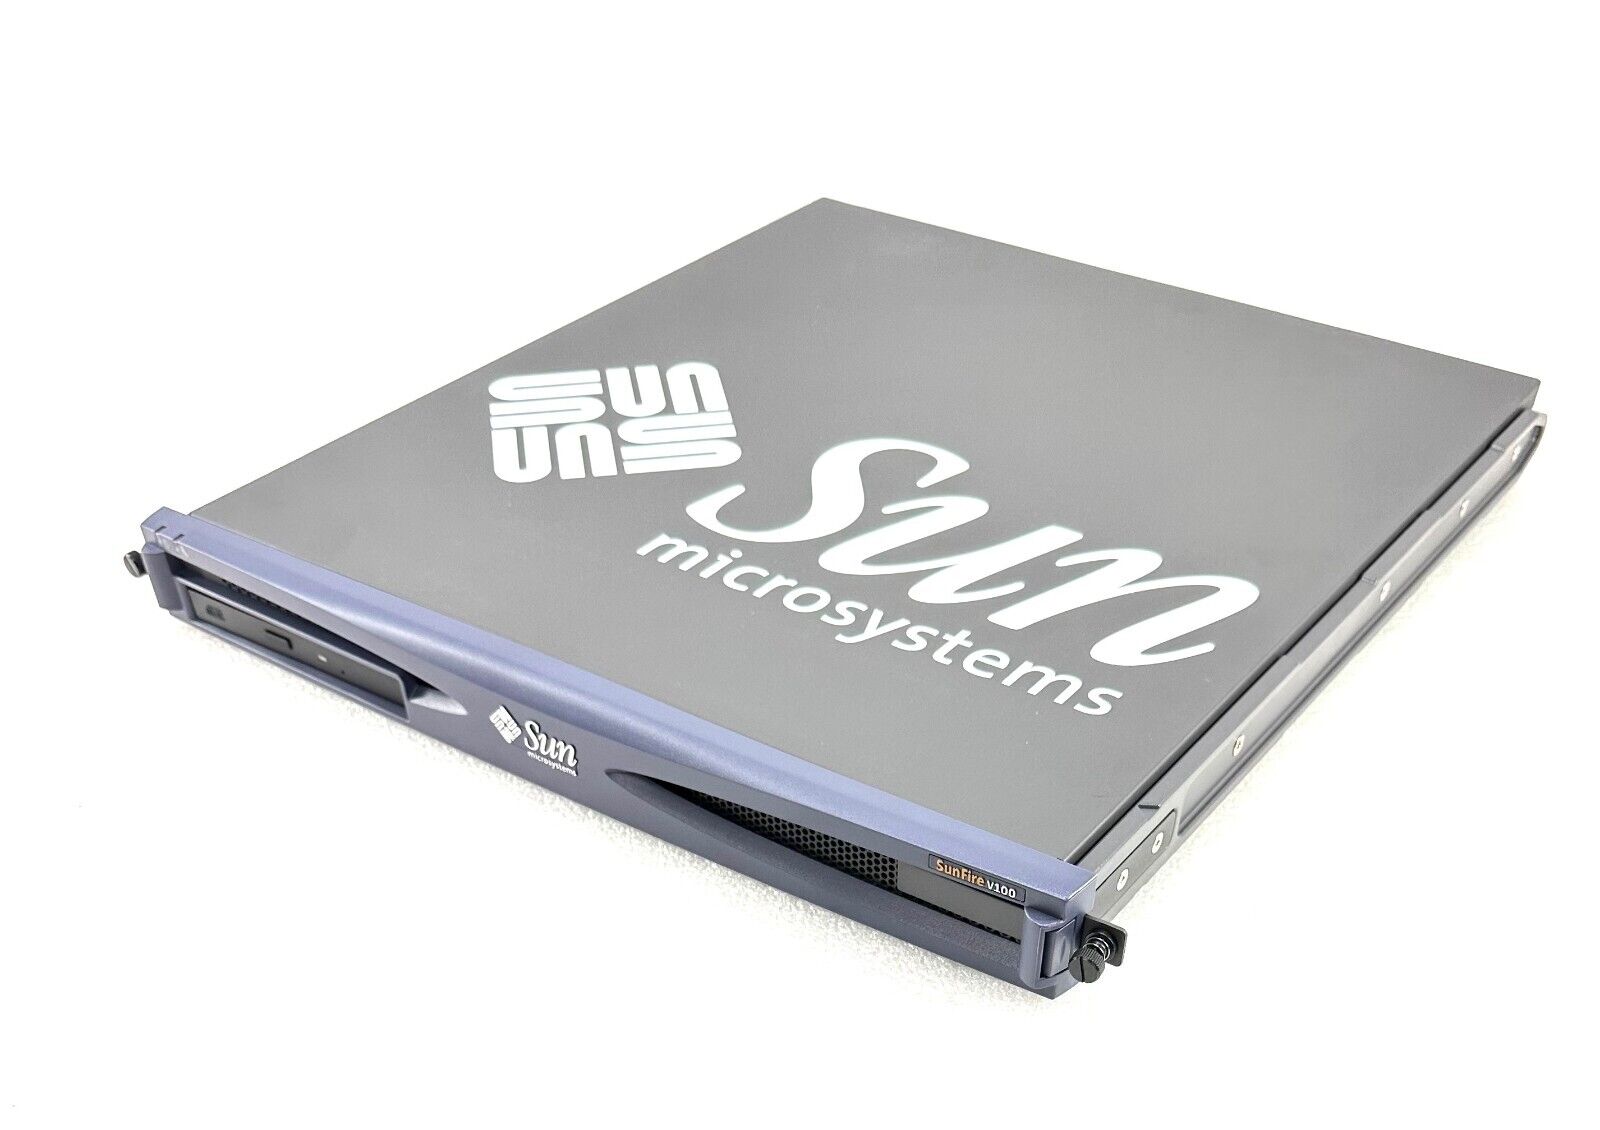 600-7997 SUN FIRE V100 650Mhz 1GB, 2x40GB HD 24X CD W/ RAIL KIT LITERATURE NEW